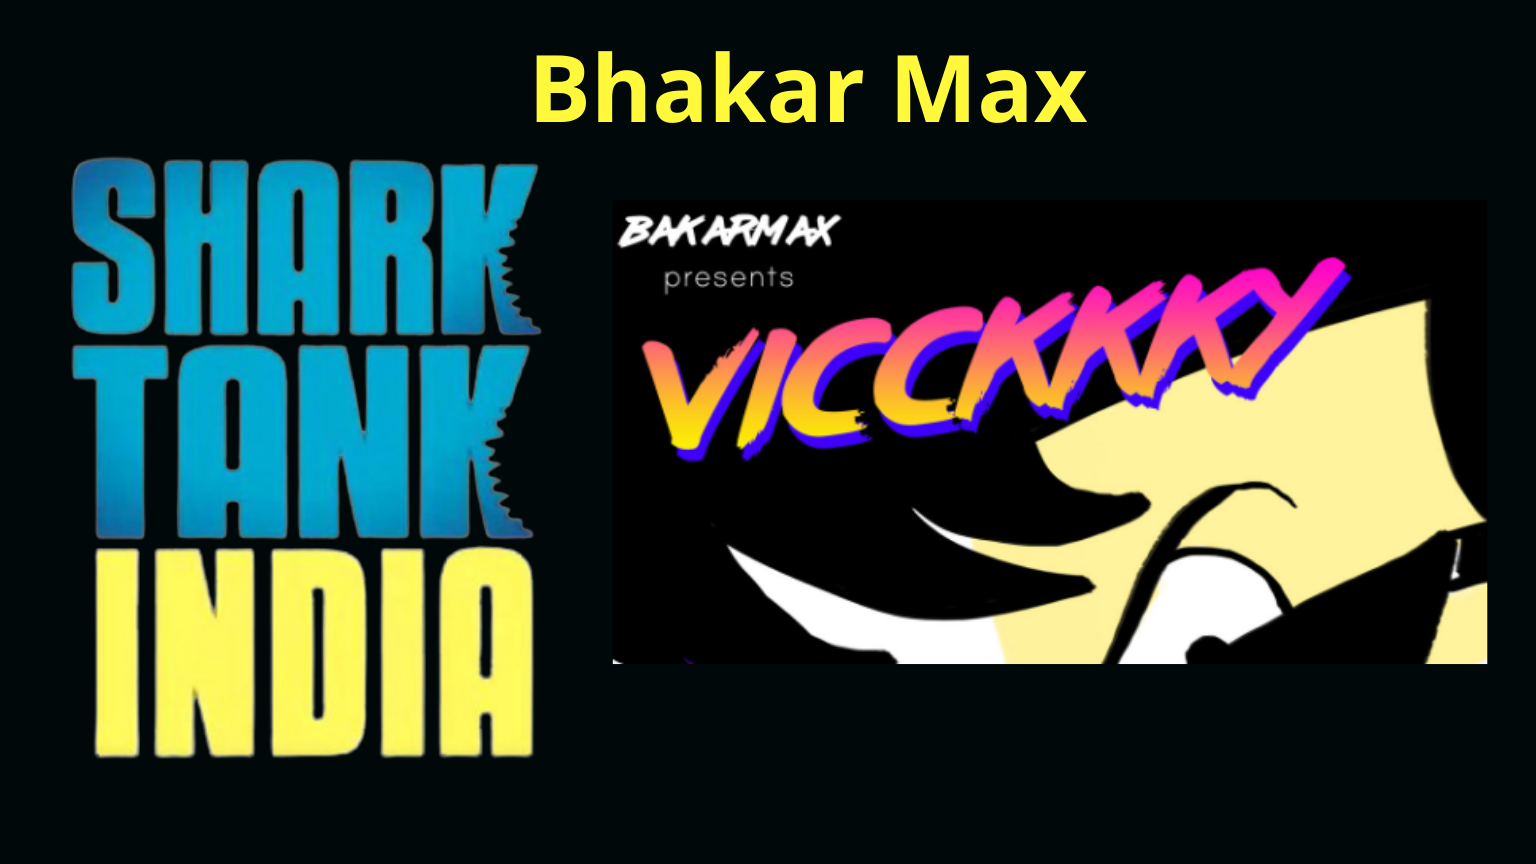 Shark tank India Bhakarmax